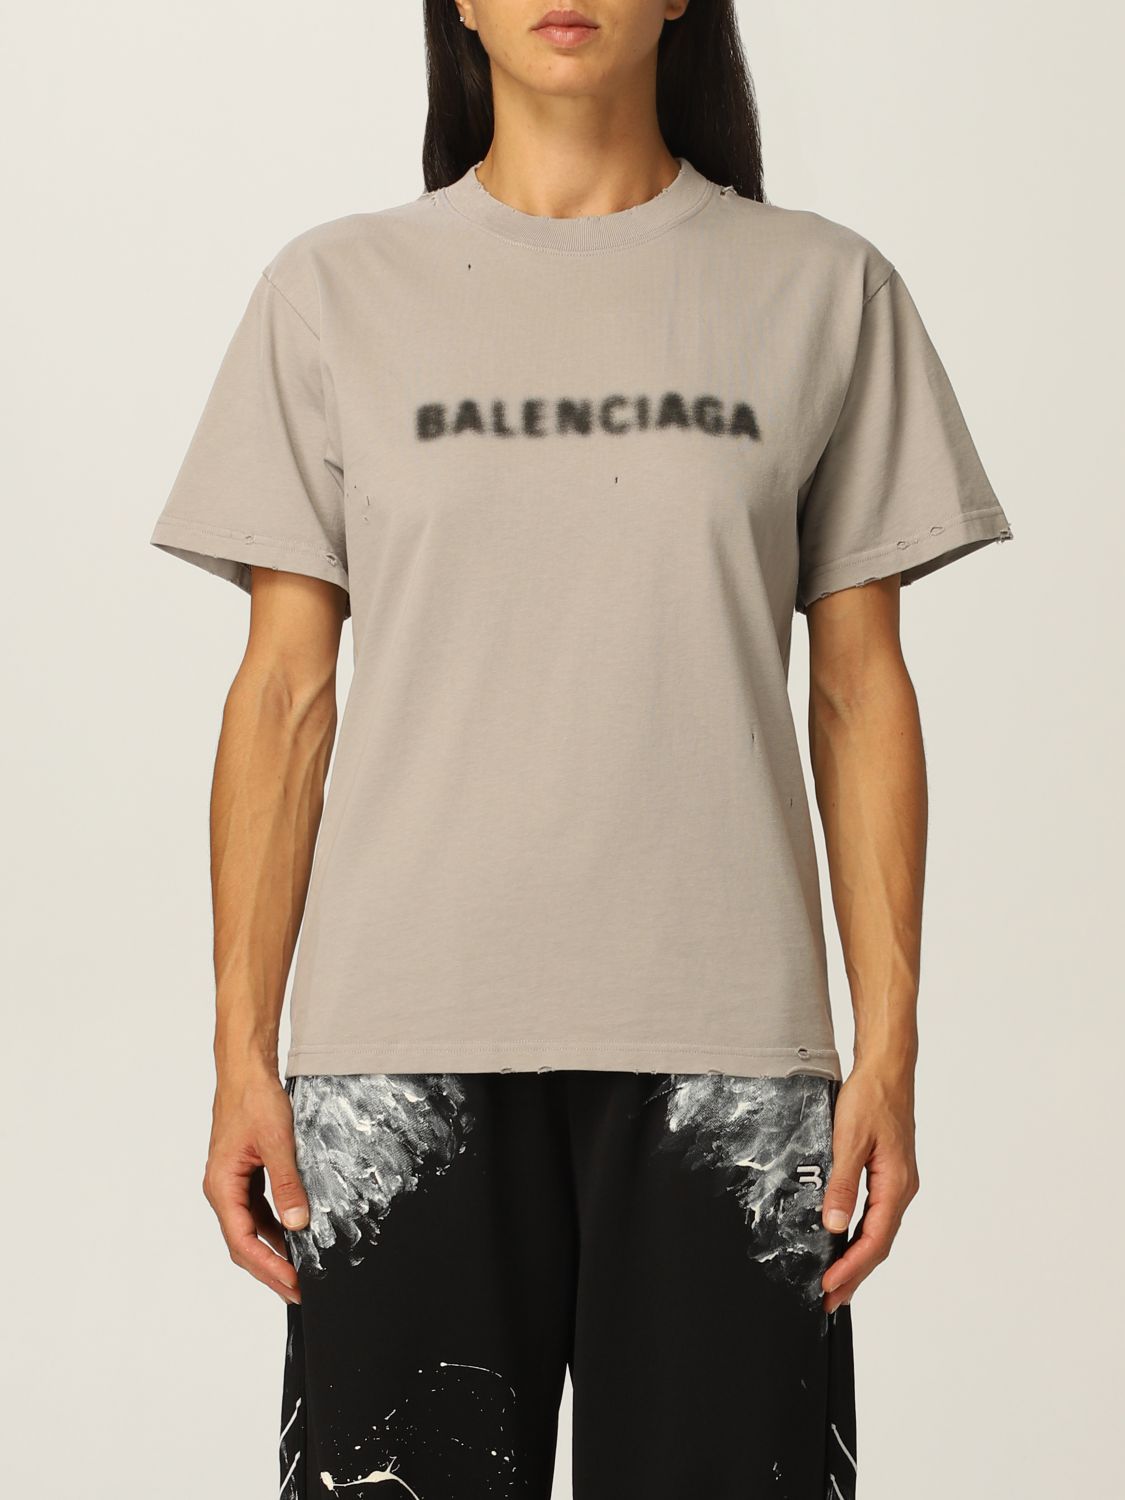 バレンシアガロゴTシャツ